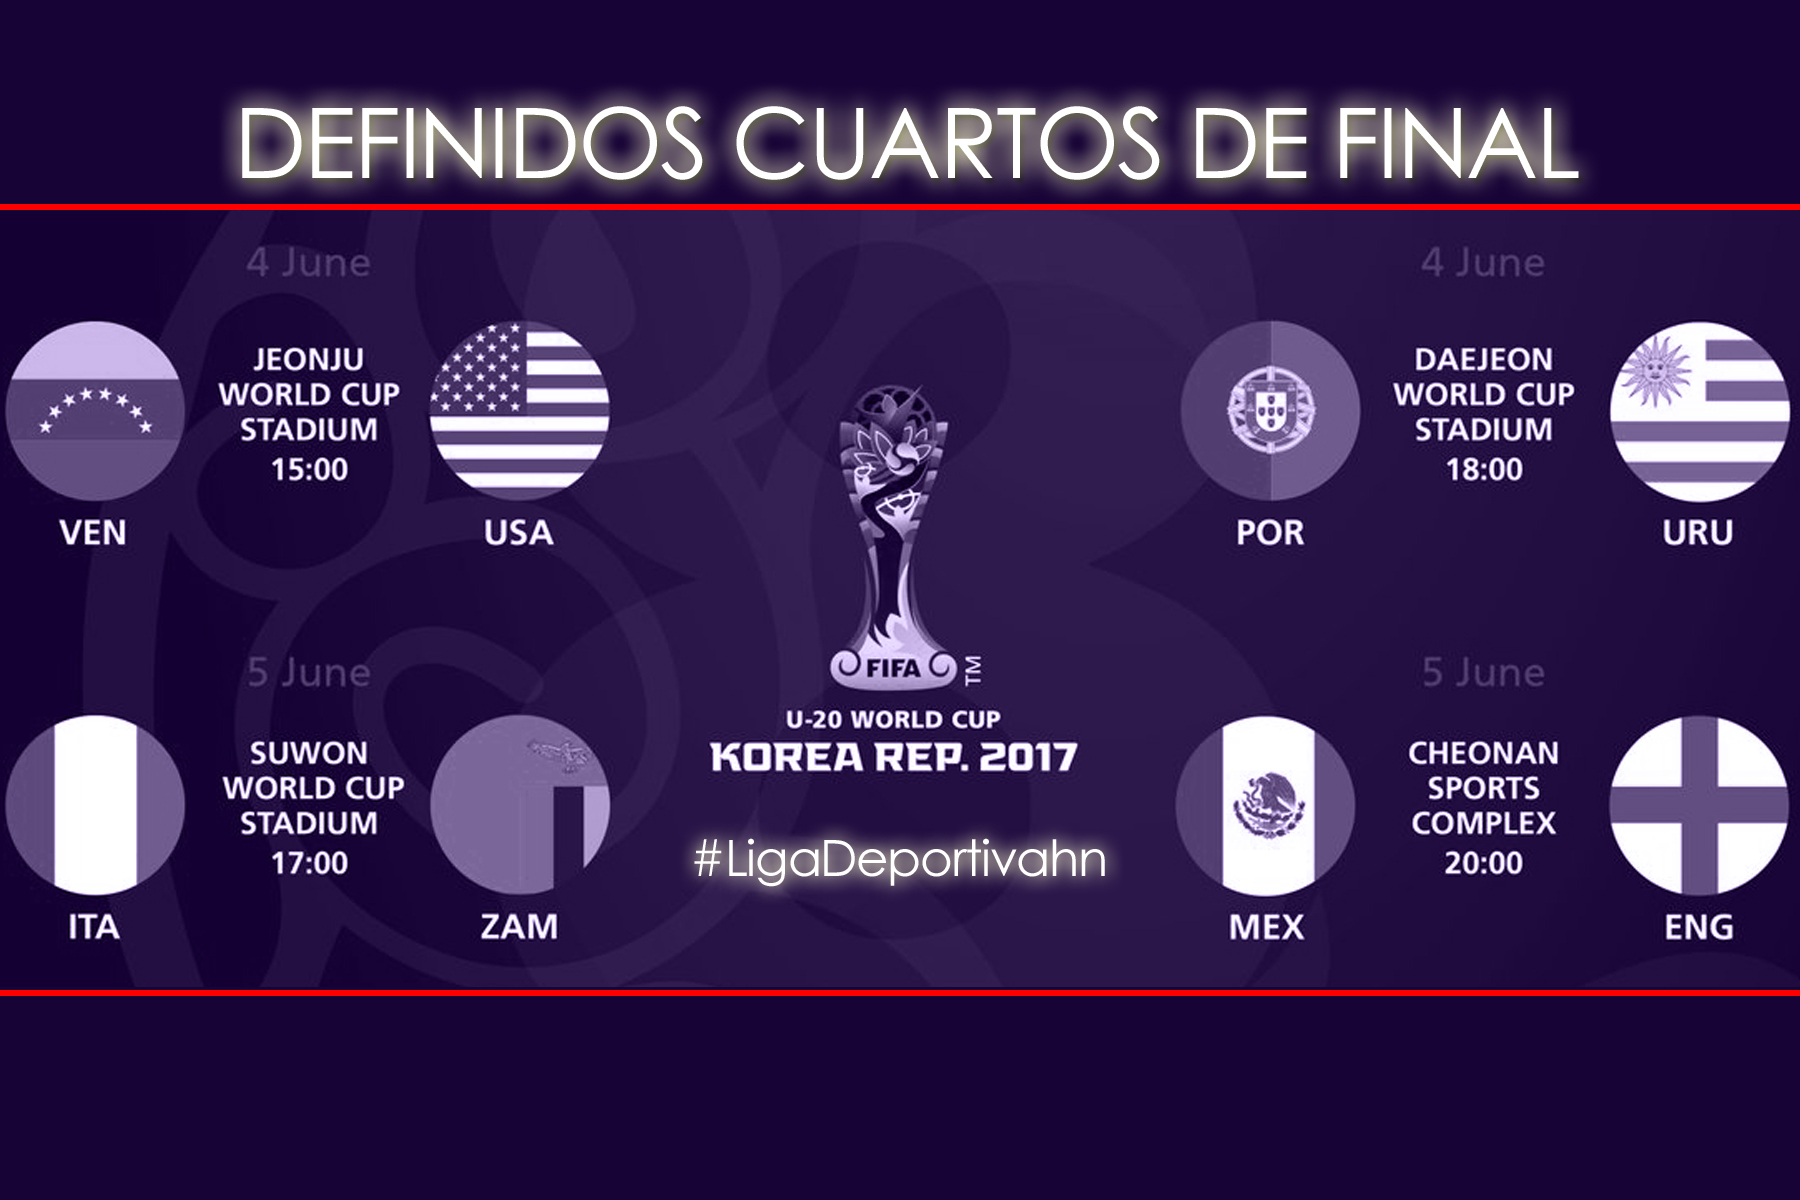 Definidos Cuartos de Final en Mundial Korea 2017 